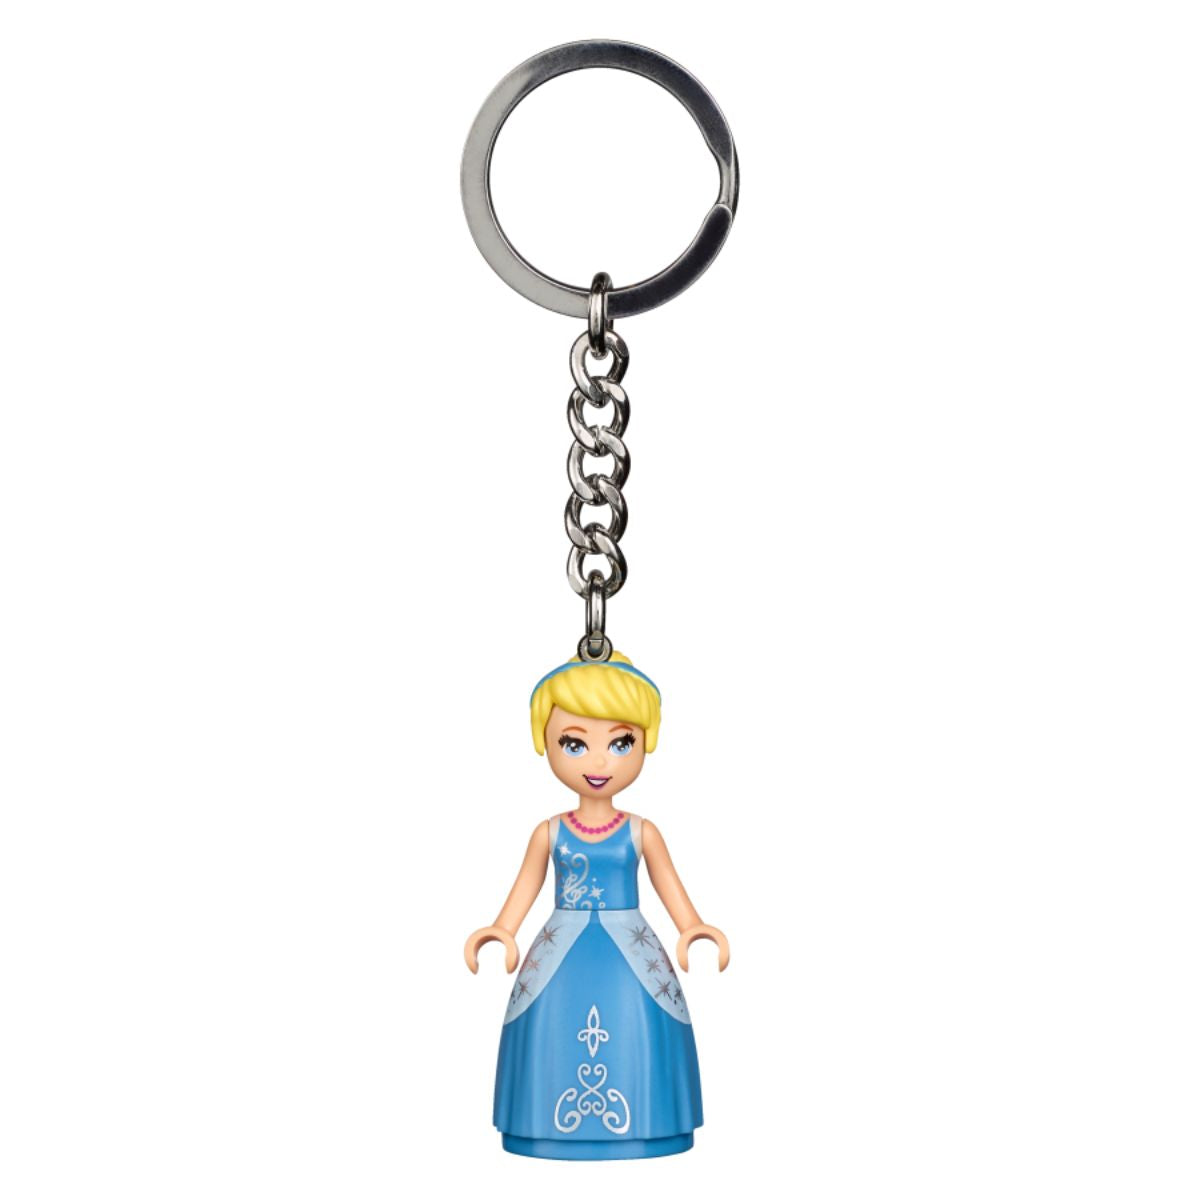 LEGO® Disney Cinderella Key Chain Keyring